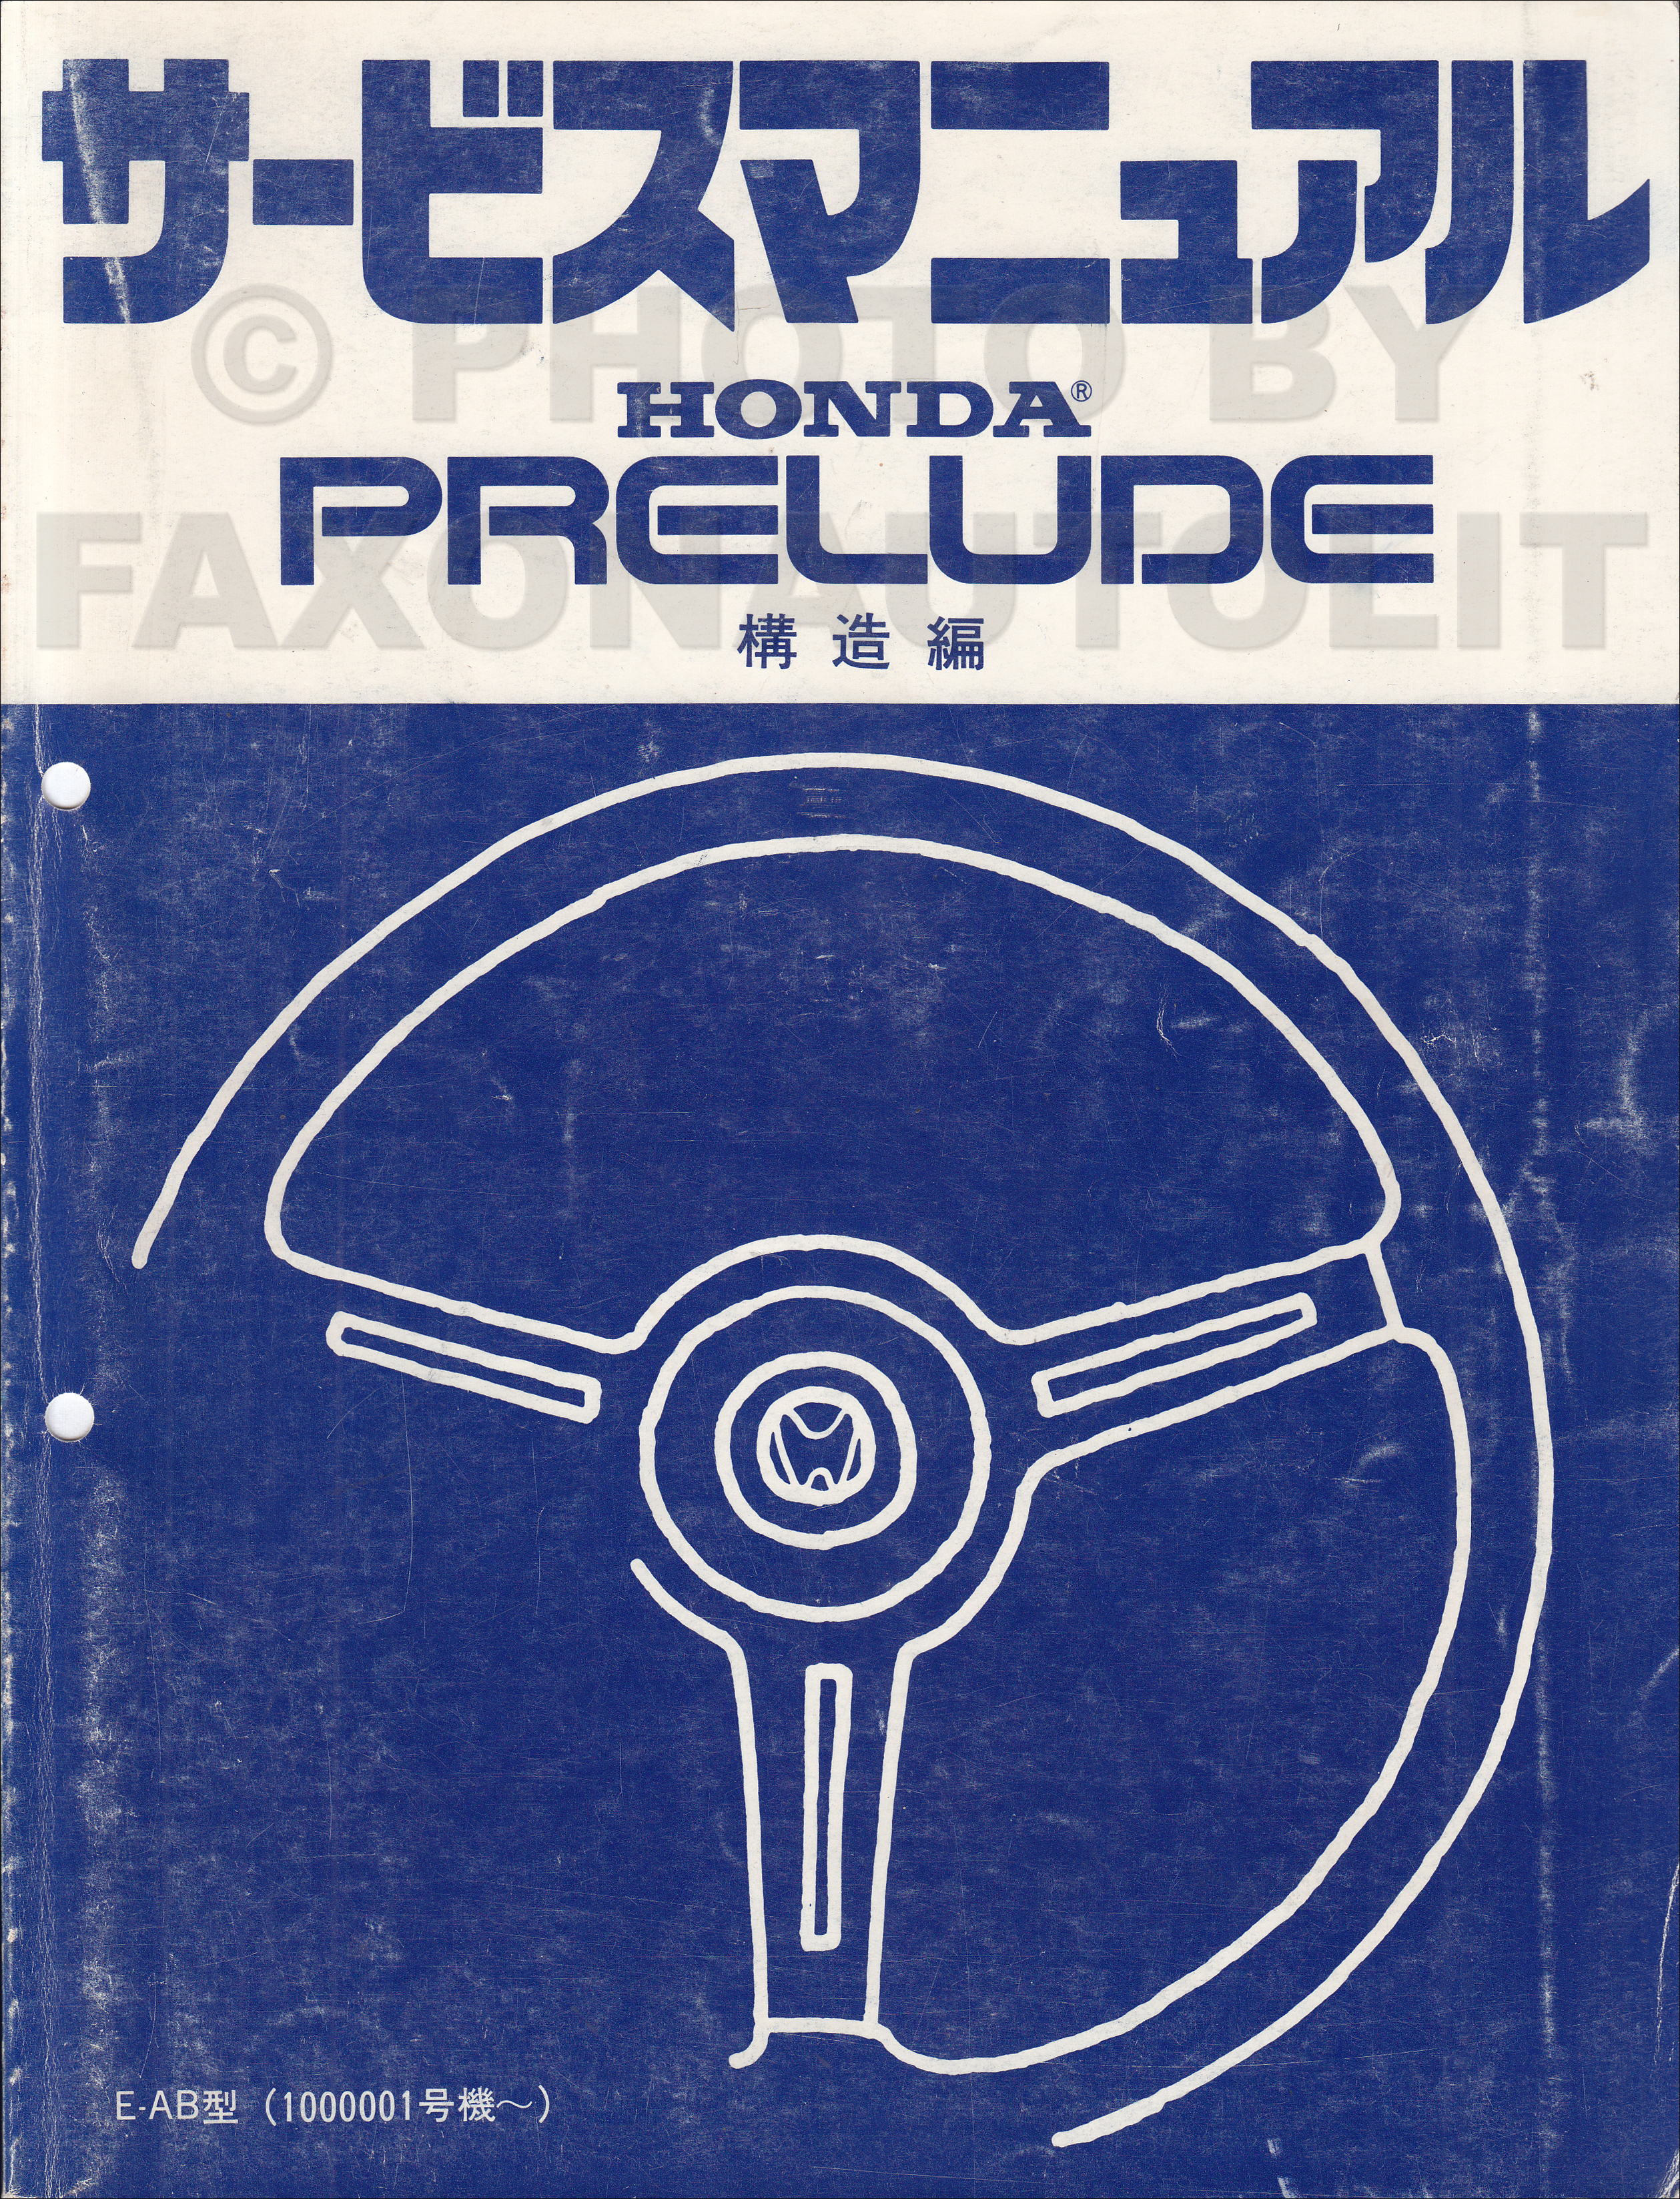 1983 Honda Prelude Repair Manual Original 